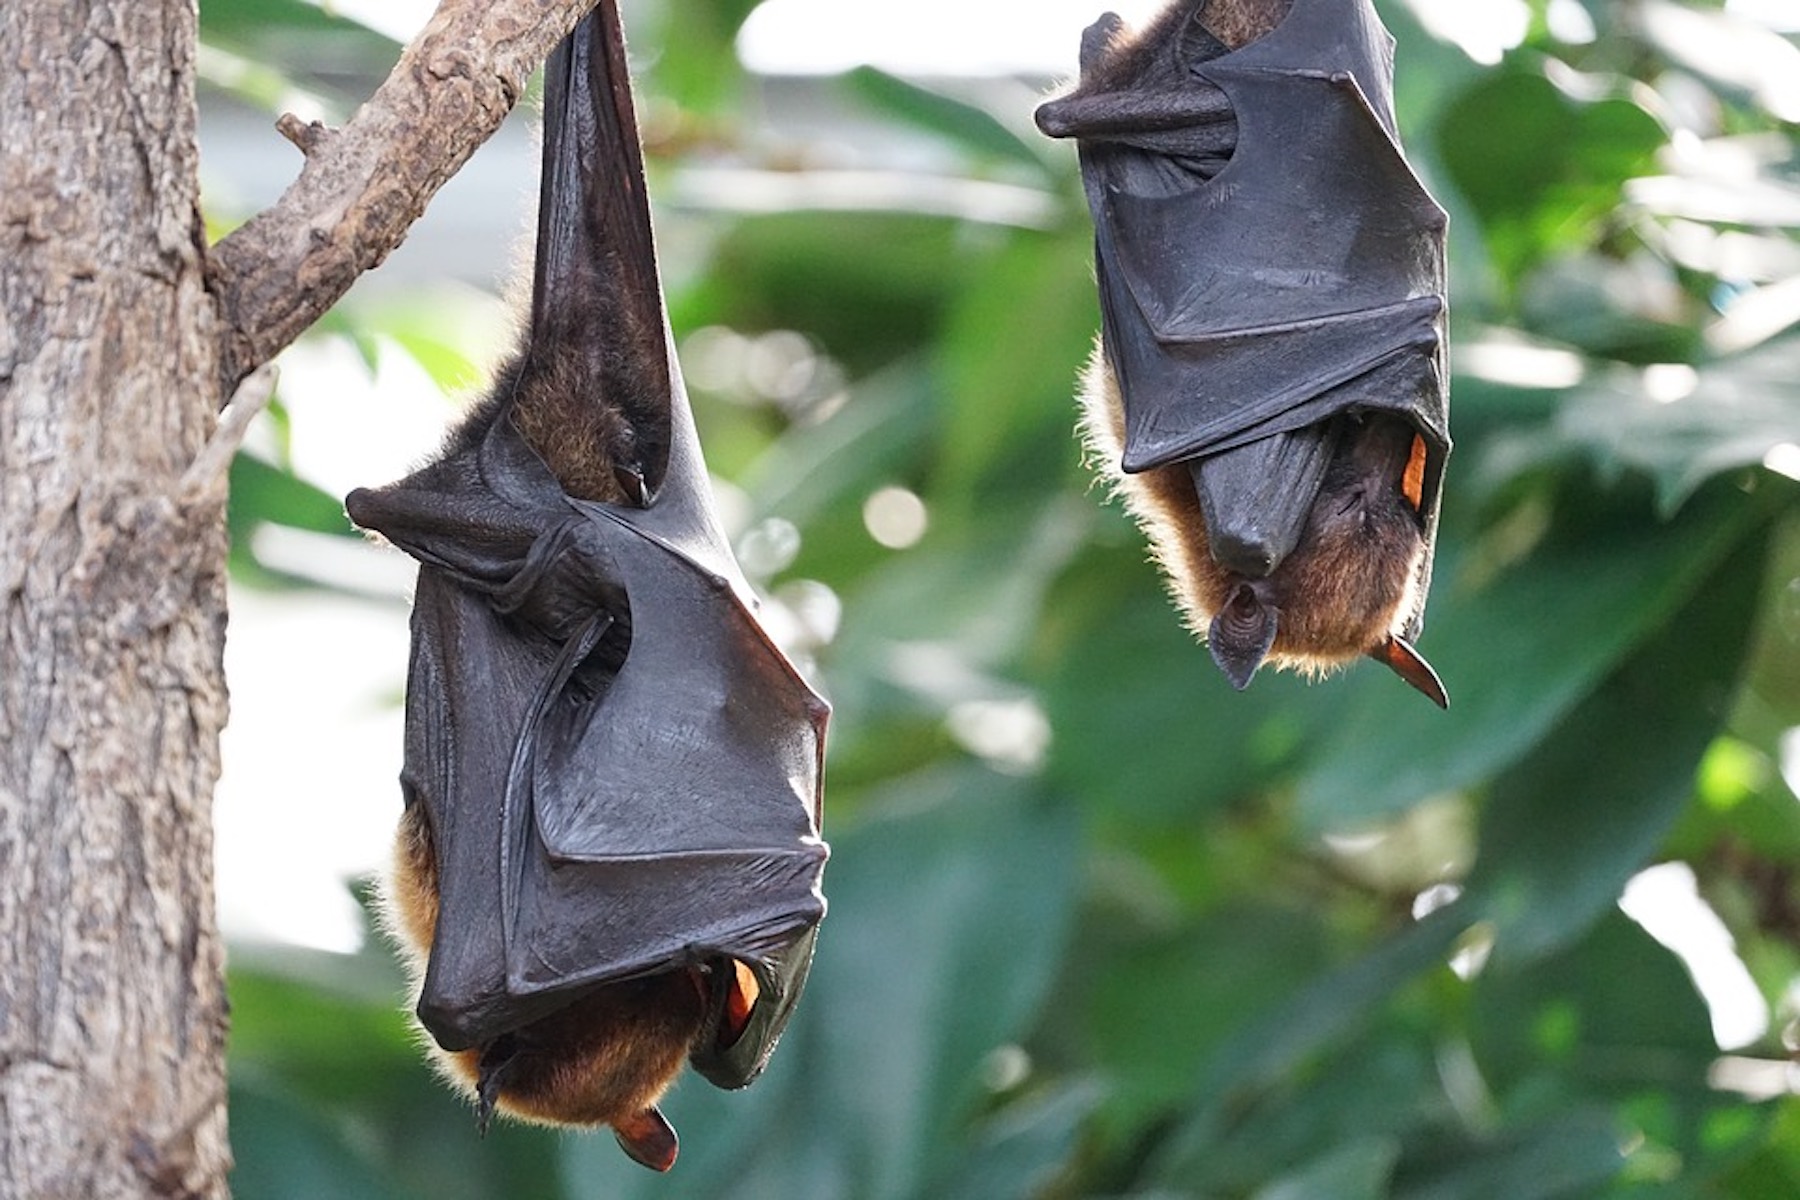 Tropical bats